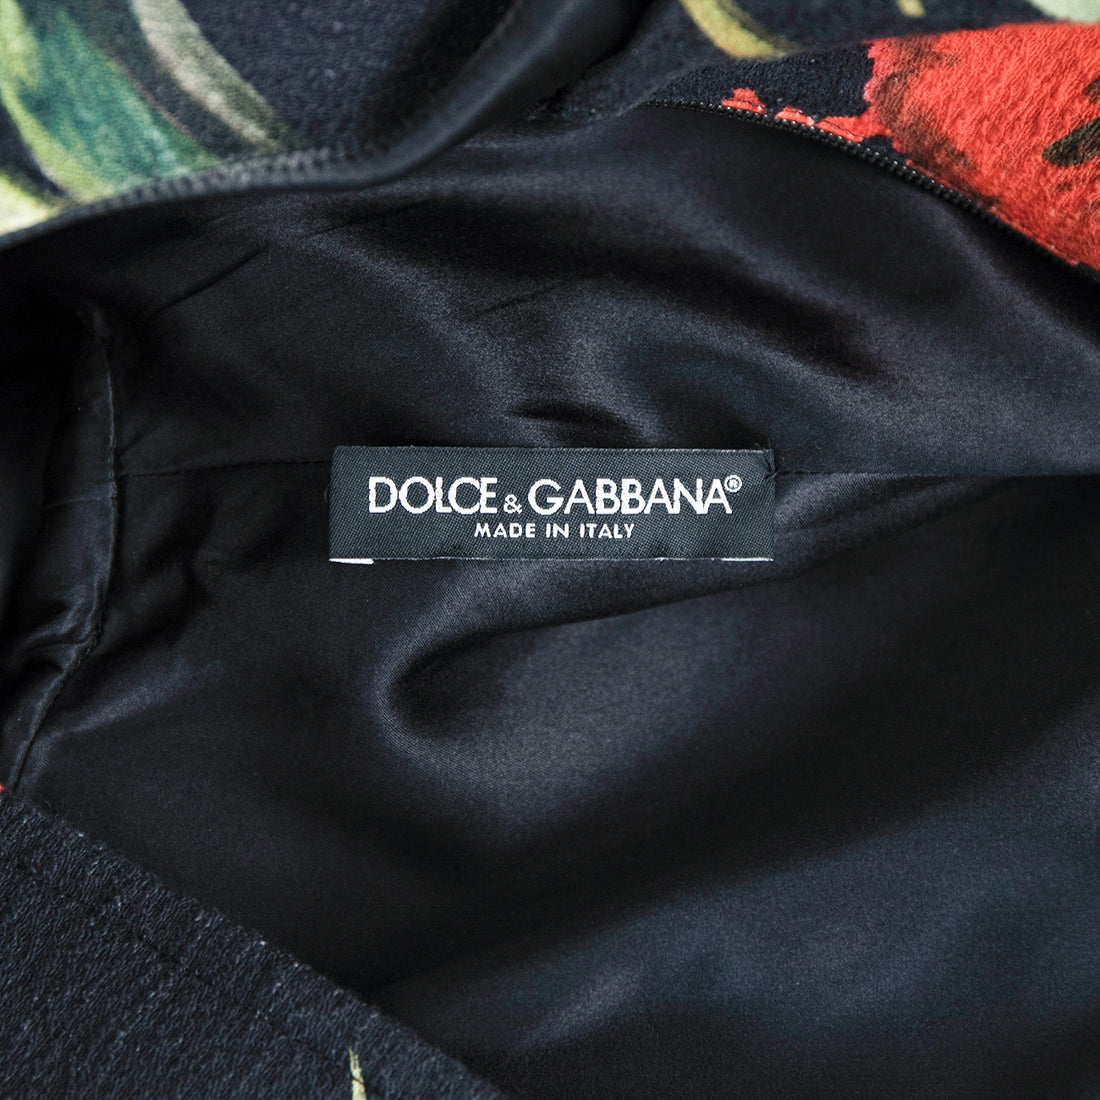 Dolce & Gabbana Minikleid im Tunikastil mit Rüschendetails